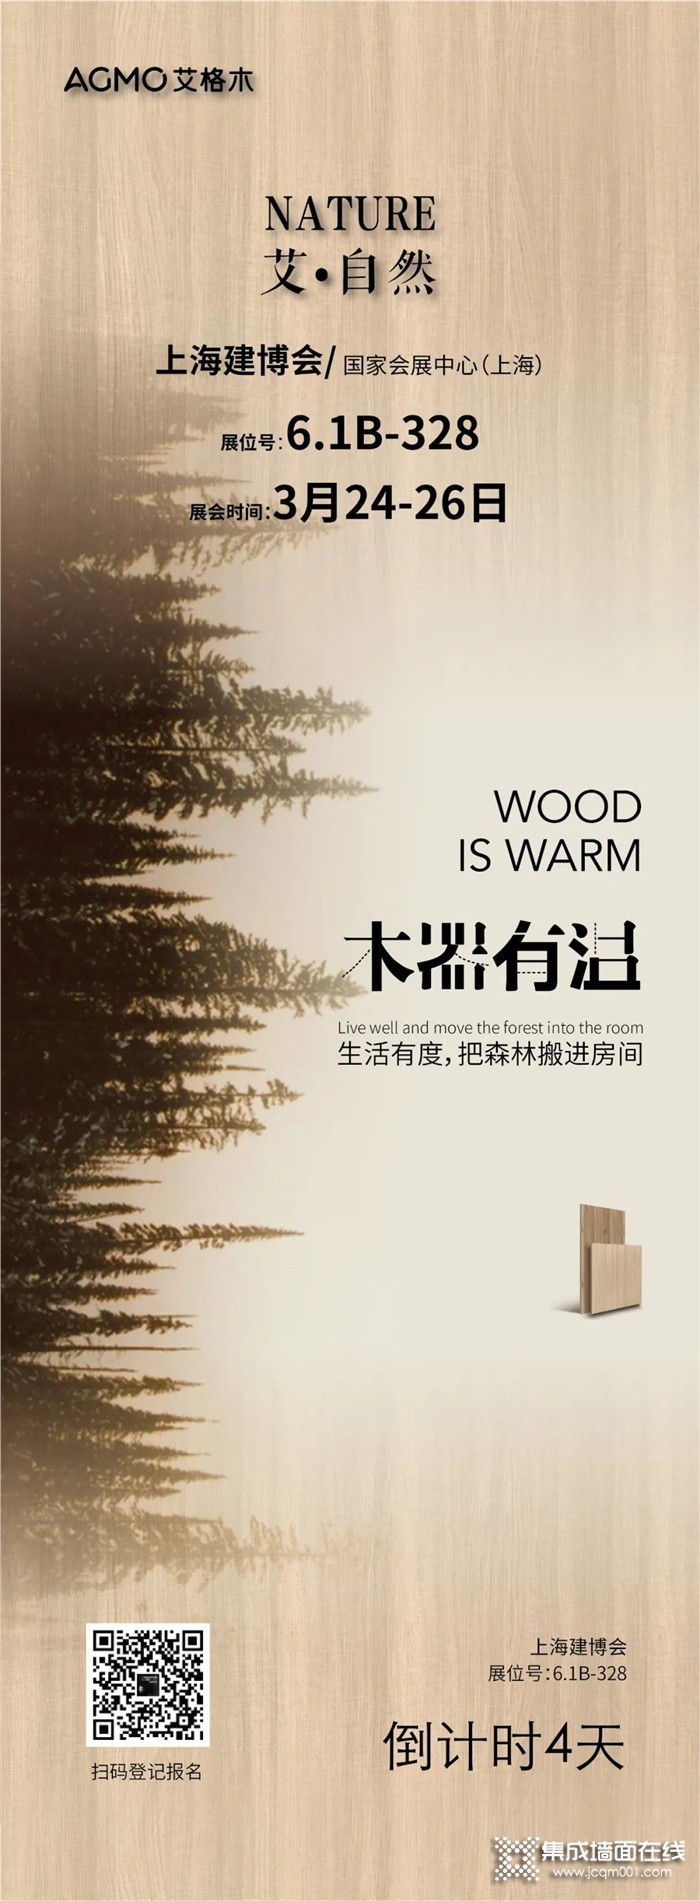 木器有温，艾格木上海建博会倒计时4天！